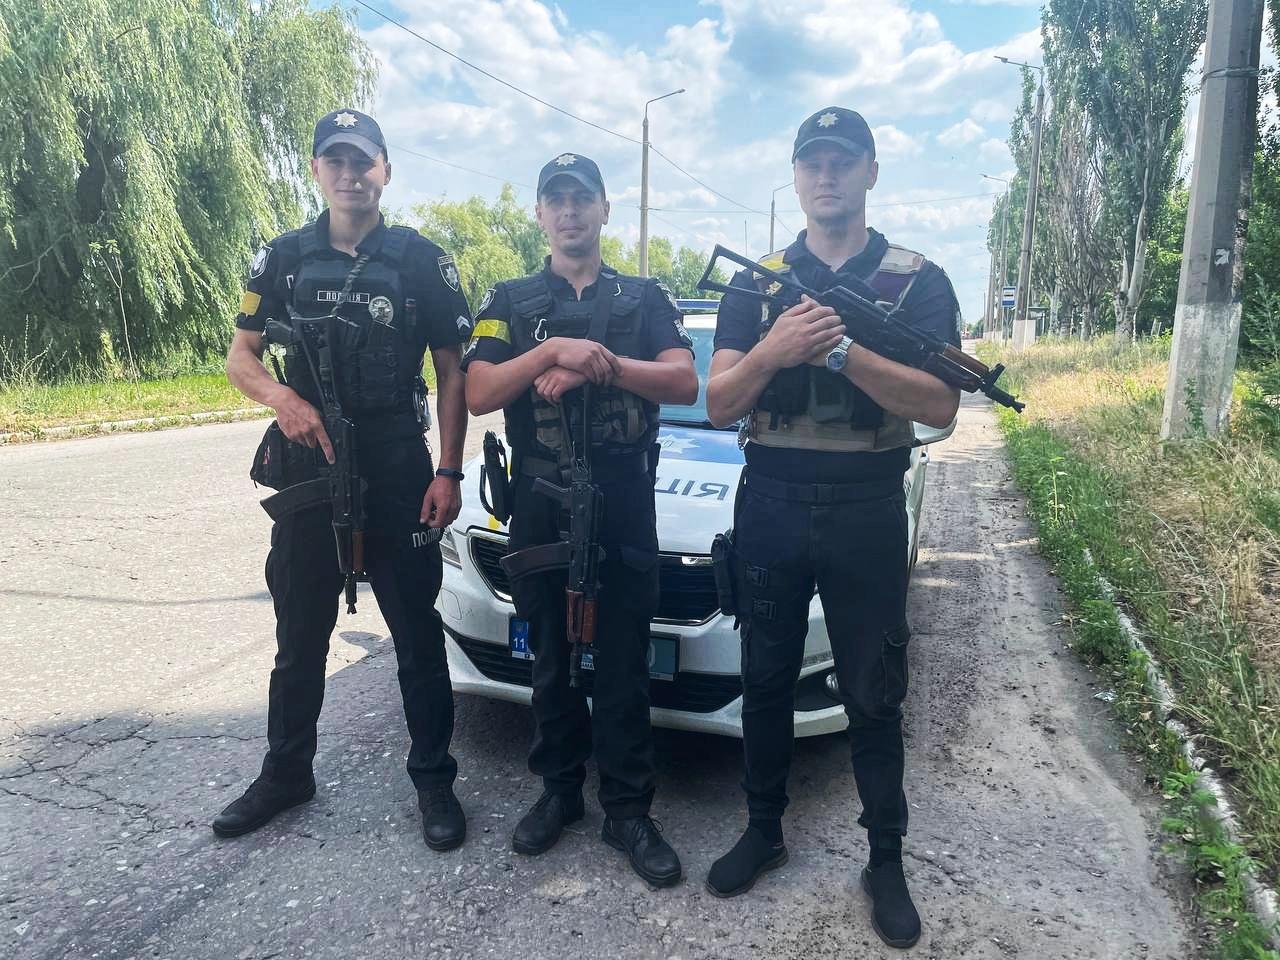 Патрульные полицейские из Донецкой области рассказали о своей работе во время открытой войны